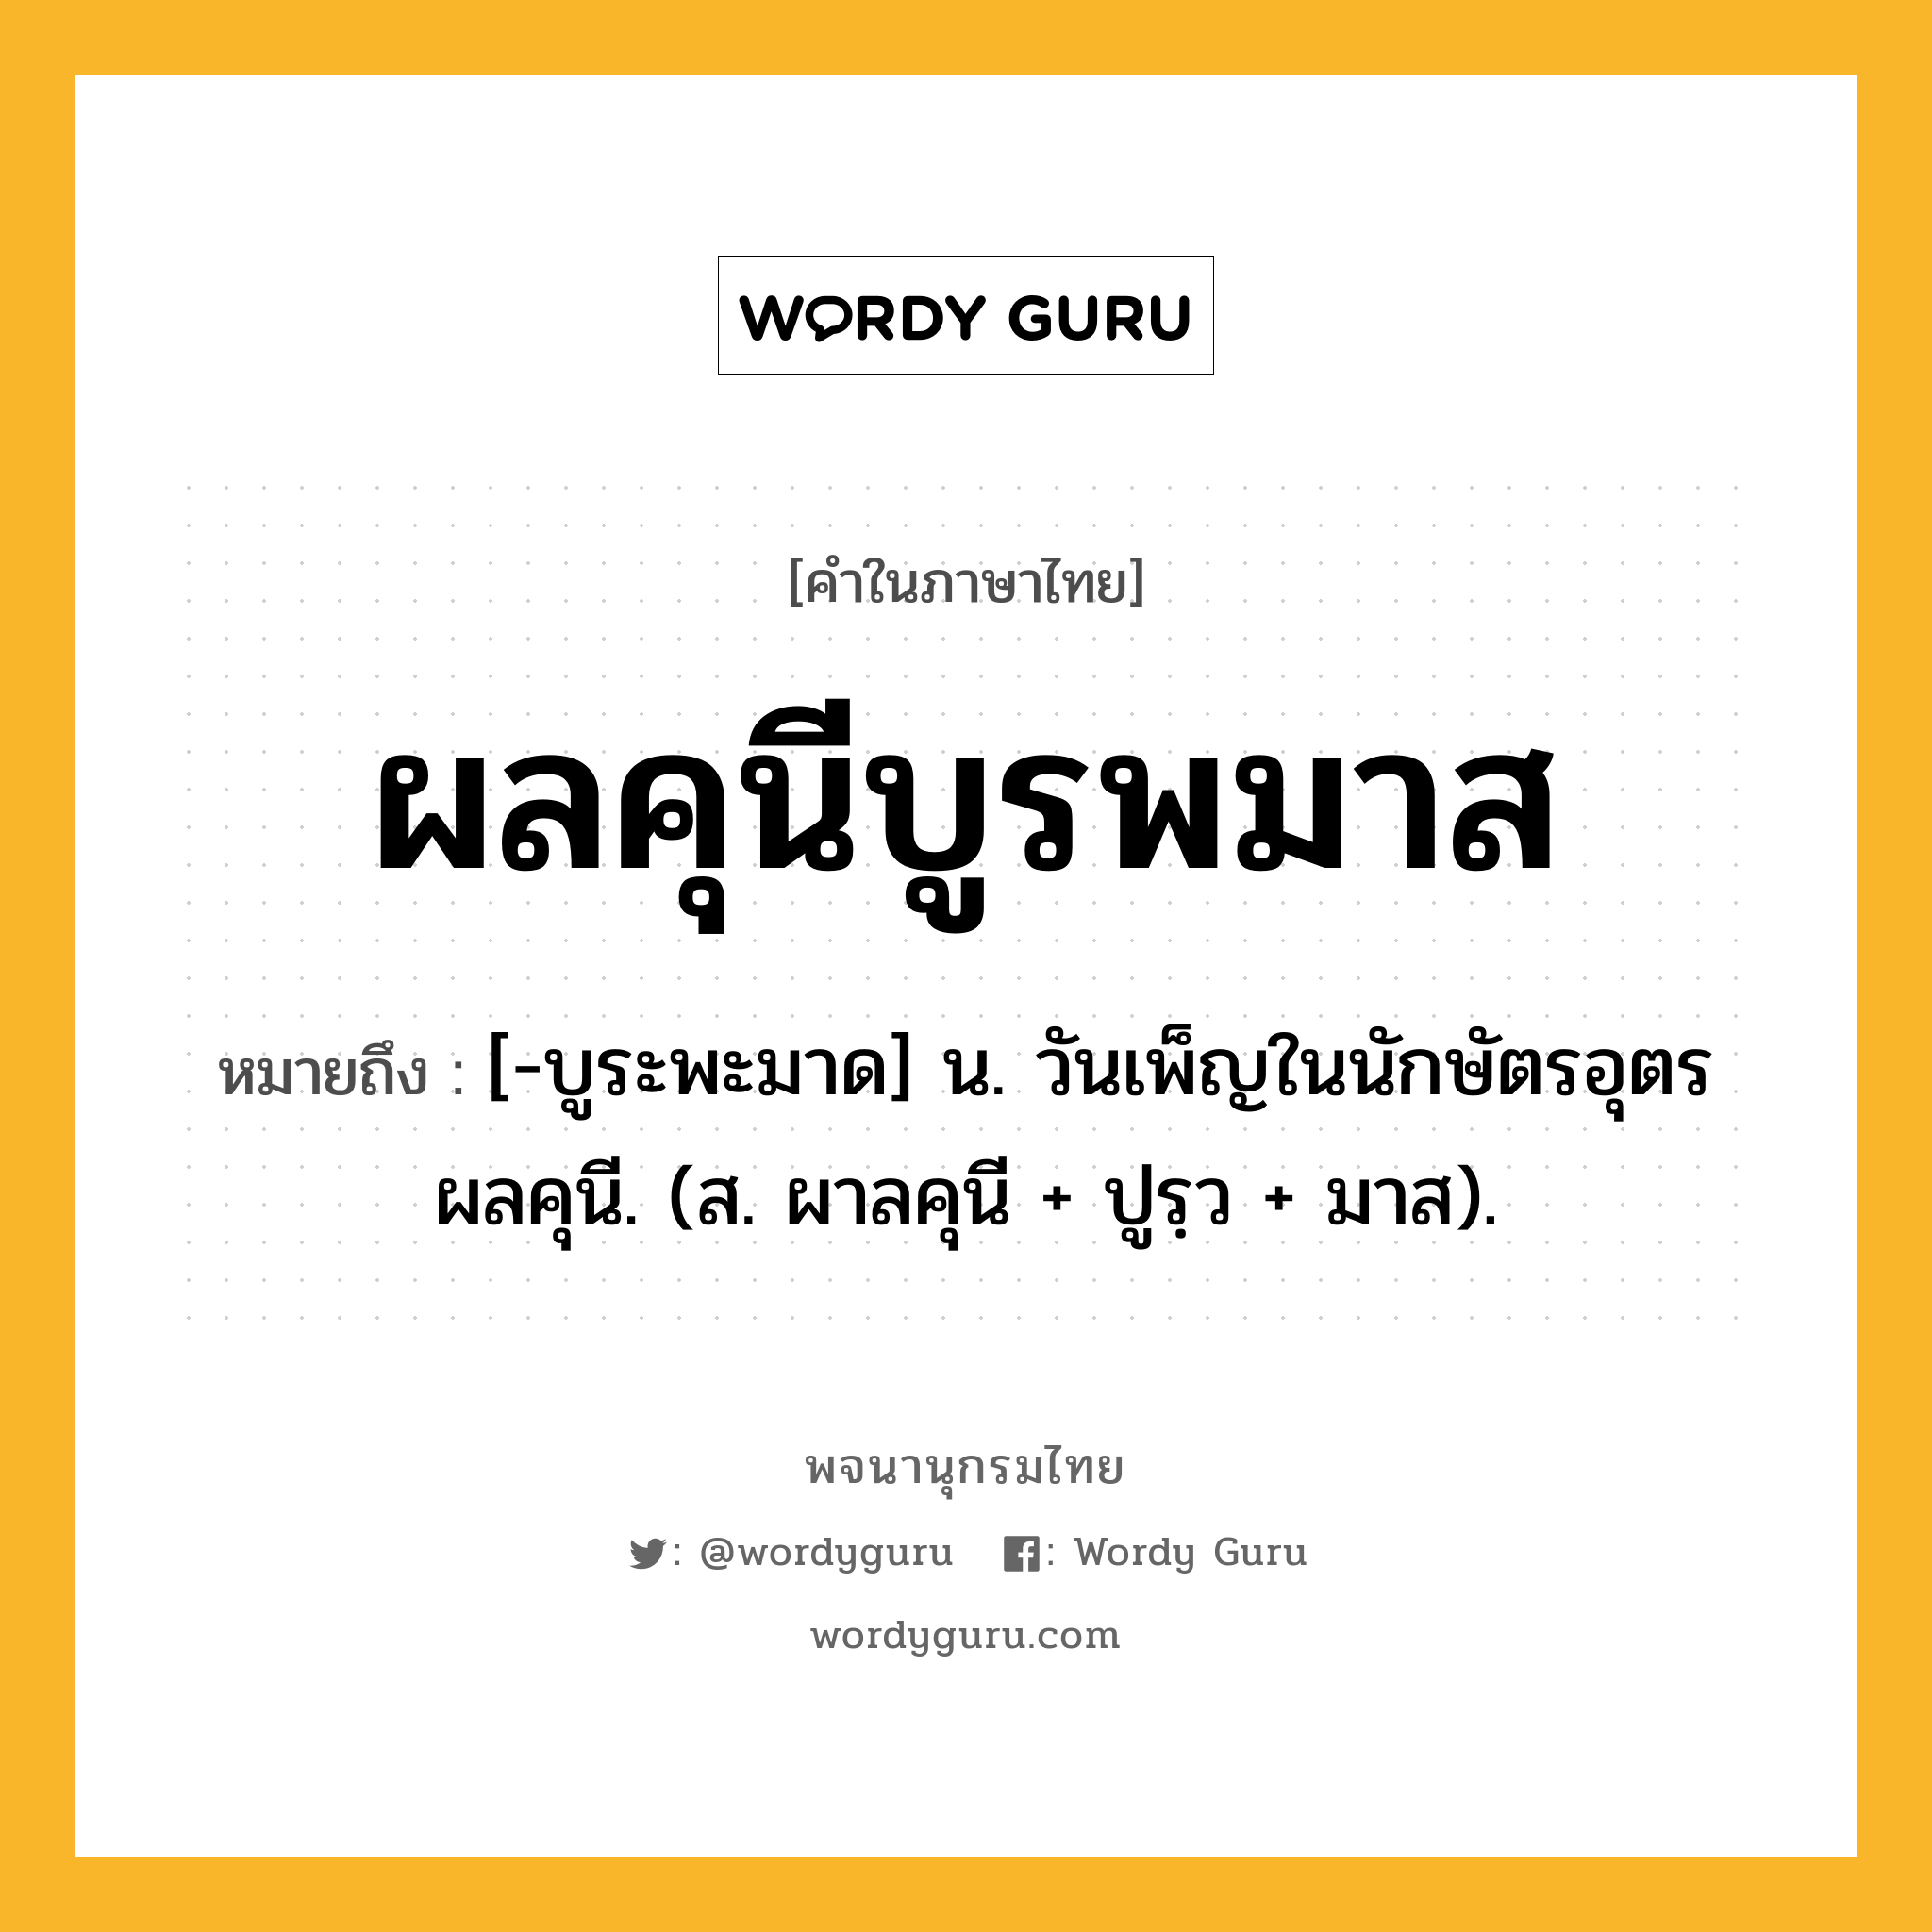 ผลคุนีบูรพมาส หมายถึงอะไร?, คำในภาษาไทย ผลคุนีบูรพมาส หมายถึง [-บูระพะมาด] น. วันเพ็ญในนักษัตรอุตรผลคุนี. (ส. ผาลคุนี + ปูรฺว + มาส).